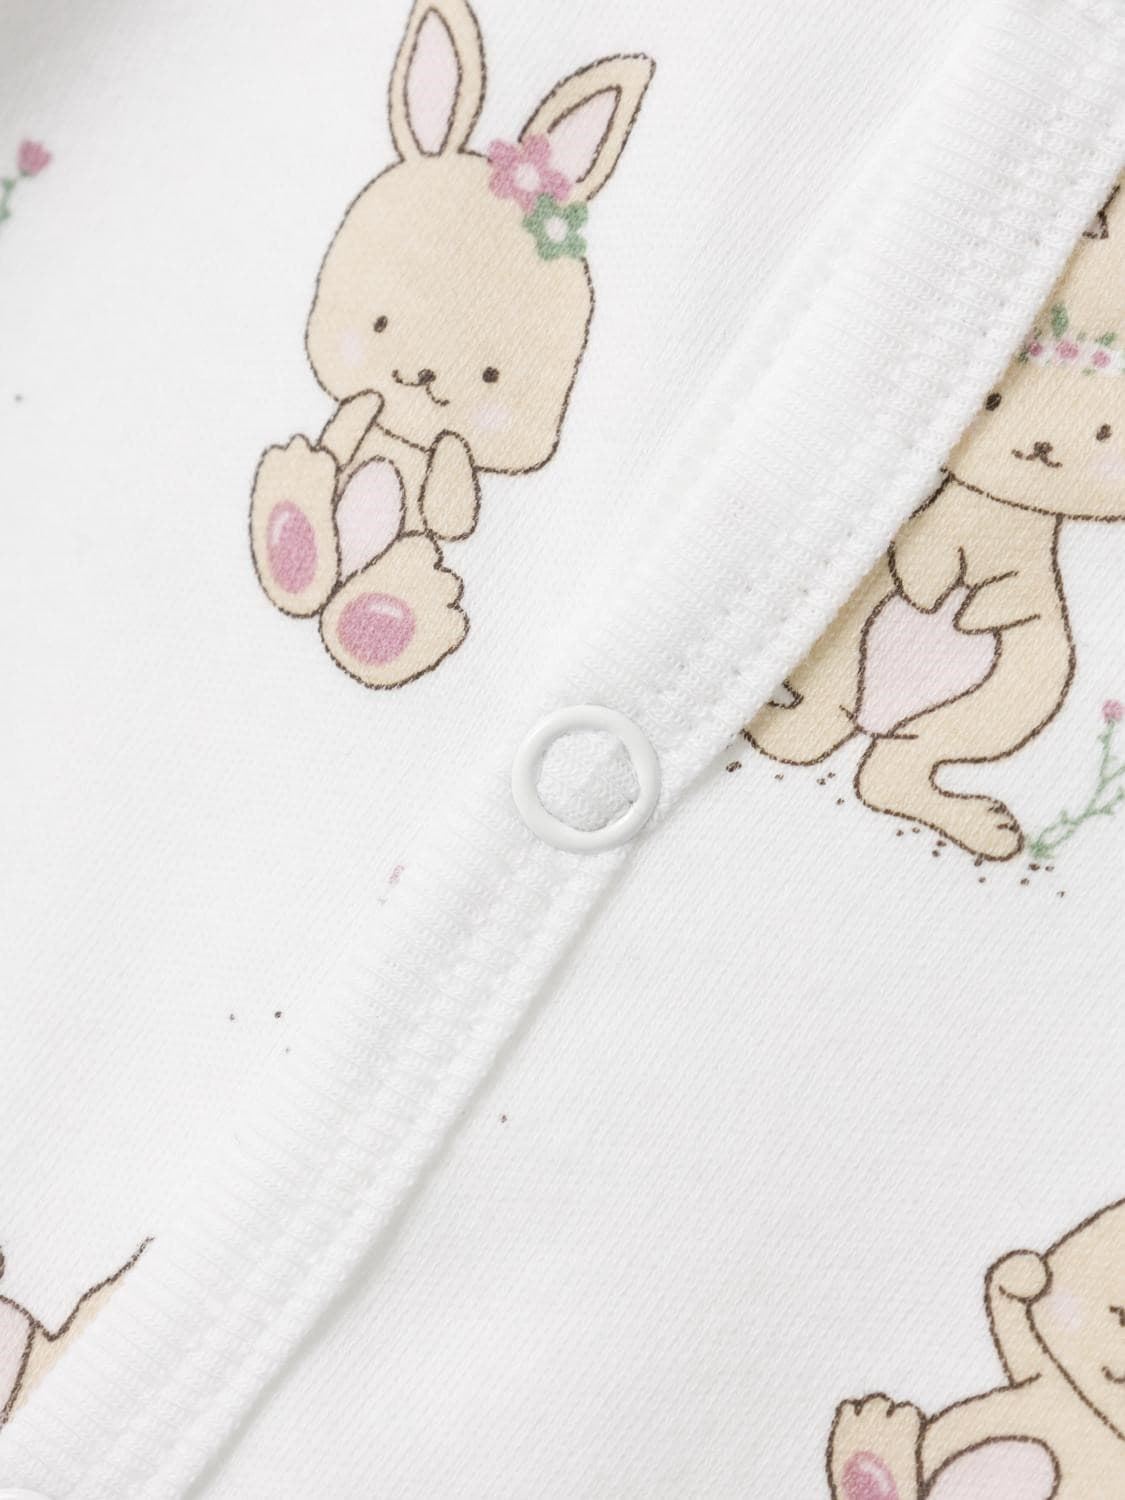 Pijama de bebé - Imagen 3